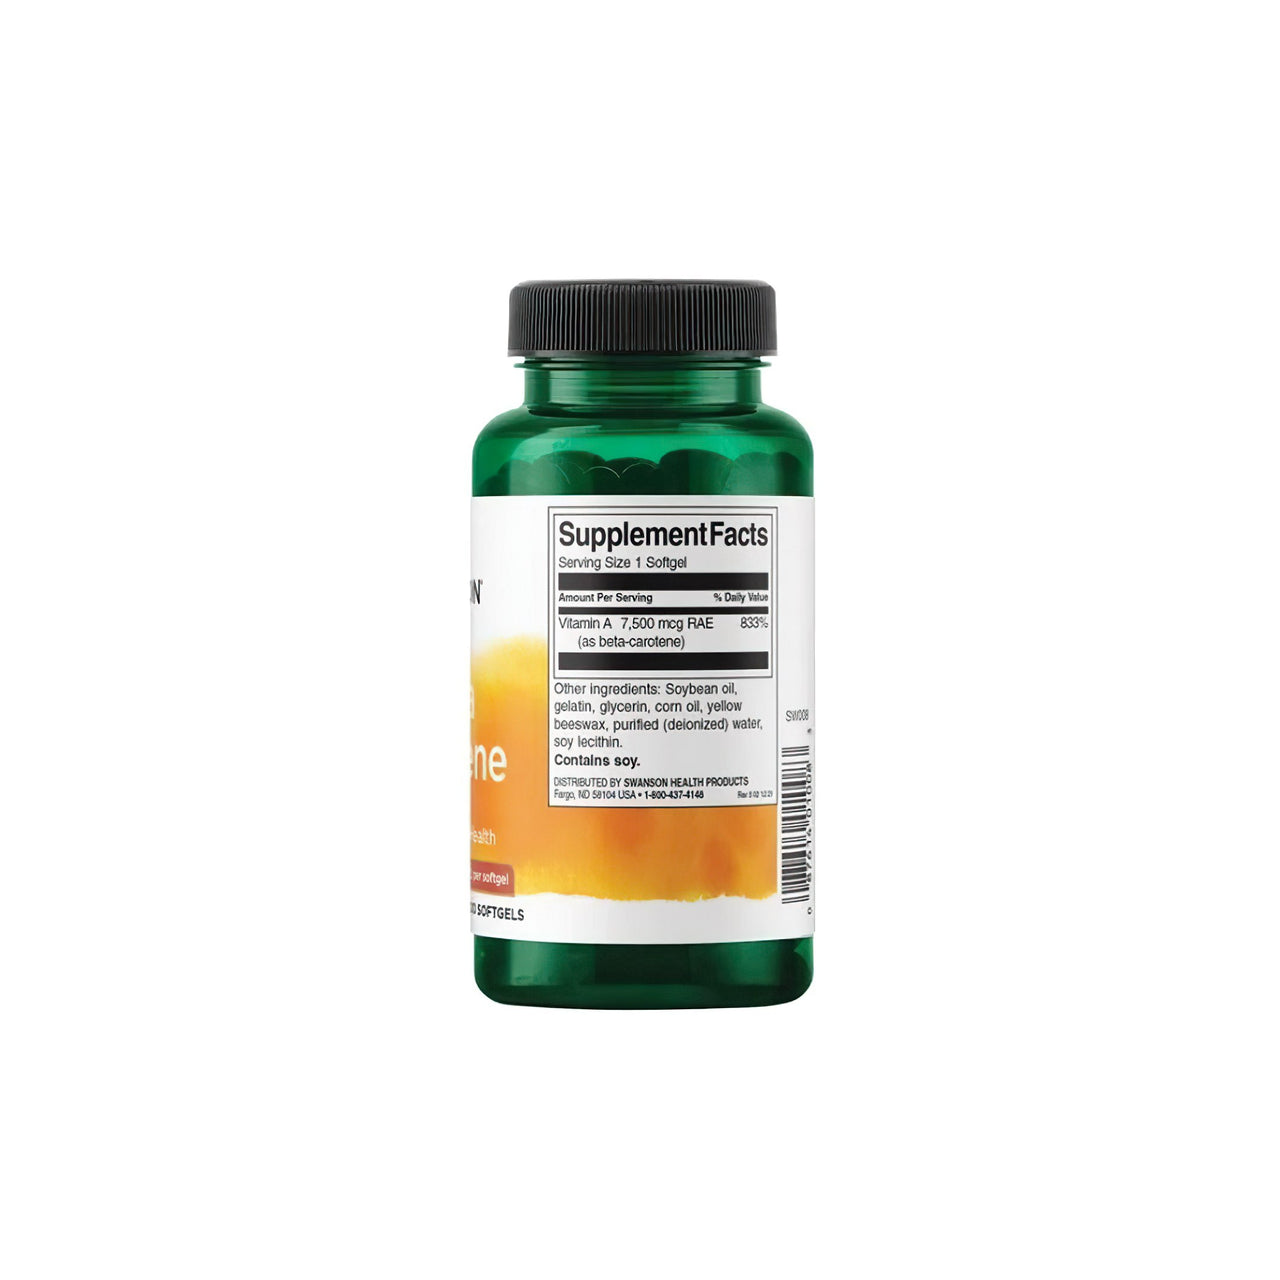 Un frasco de suplemento dietético de Swanson Beta-Carotene - 25000 IU 300 softgels Vitamin A sobre fondo blanco.